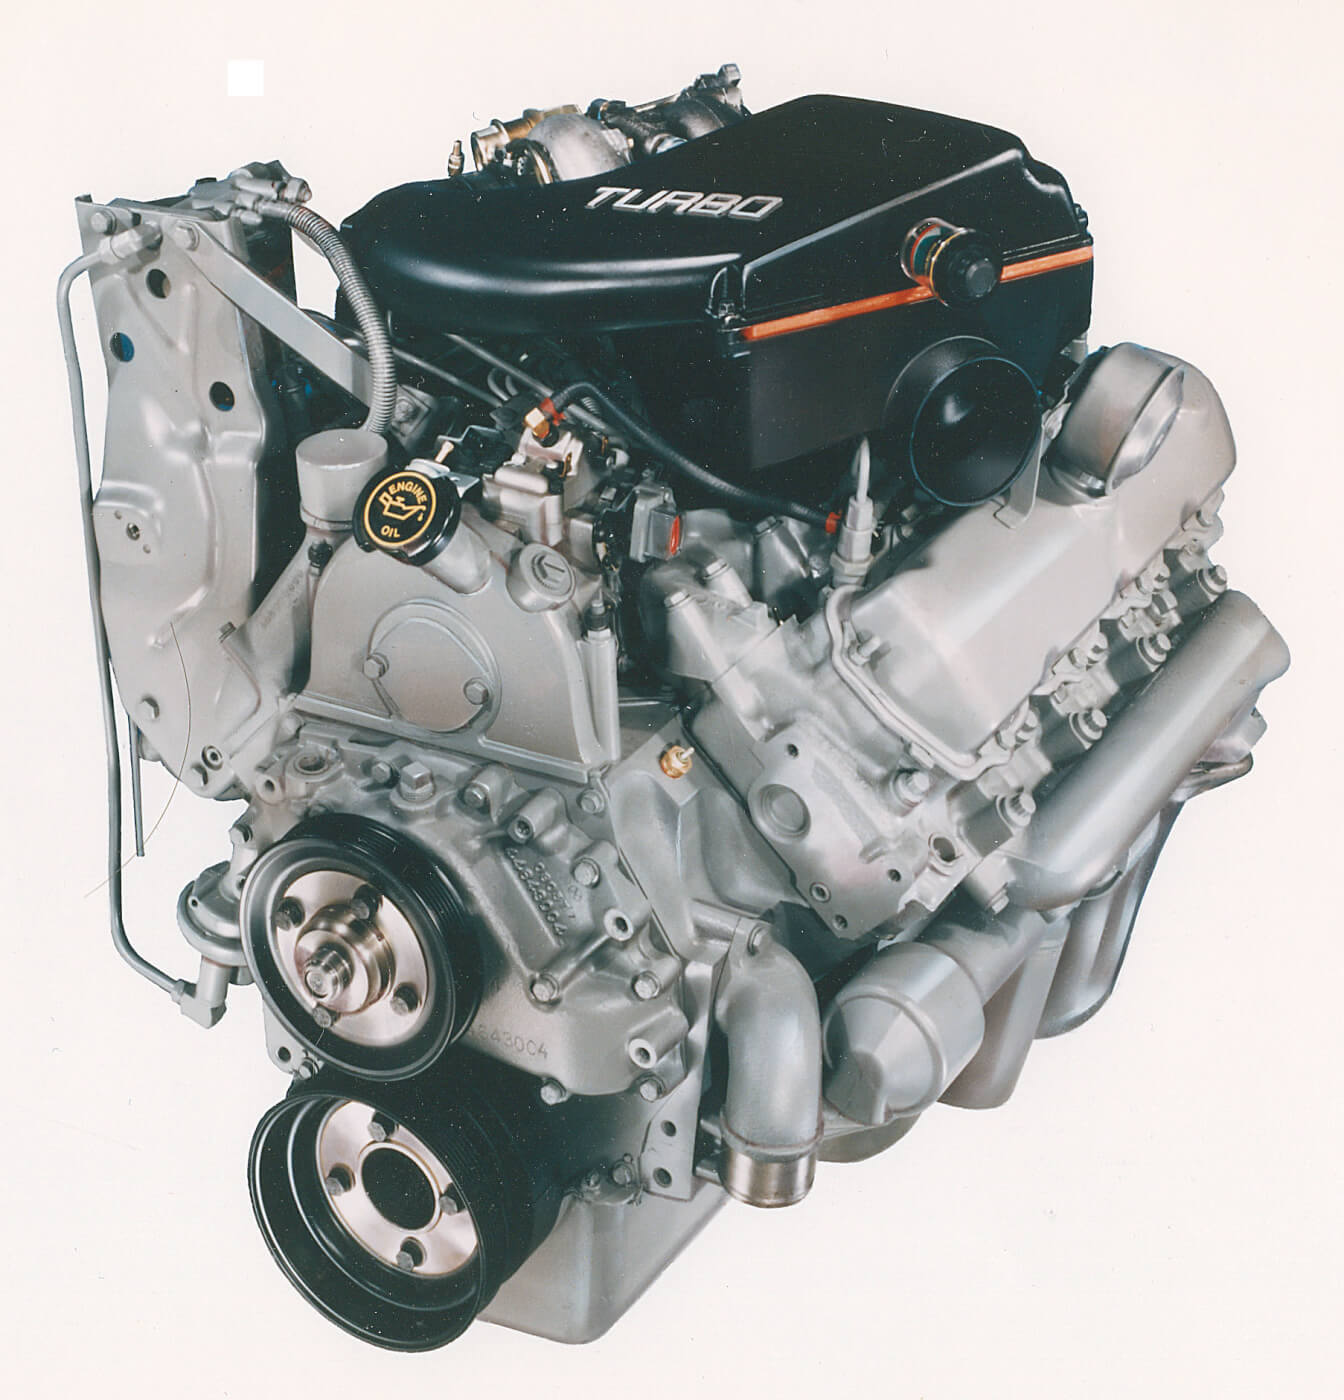 Het toppunt van de Ford IDI was de 7.3L IDIT turbo motor. Deze motor werd geadverteerd met 190 pk en 385 lb-ft, maar wordt algemeen beschouwd als een ondergewaardeerde motor die door Ford werd getuned om de opkomende Power Stroke niet te overtreffen. Het was een aanzienlijk robuustere motor, met sterkere zuigers en stangen, een sterker blok (gietnummer 10809000C3) en koppakkingen, Inconel uitlaatkleppen en een grotere oliekoeler. 